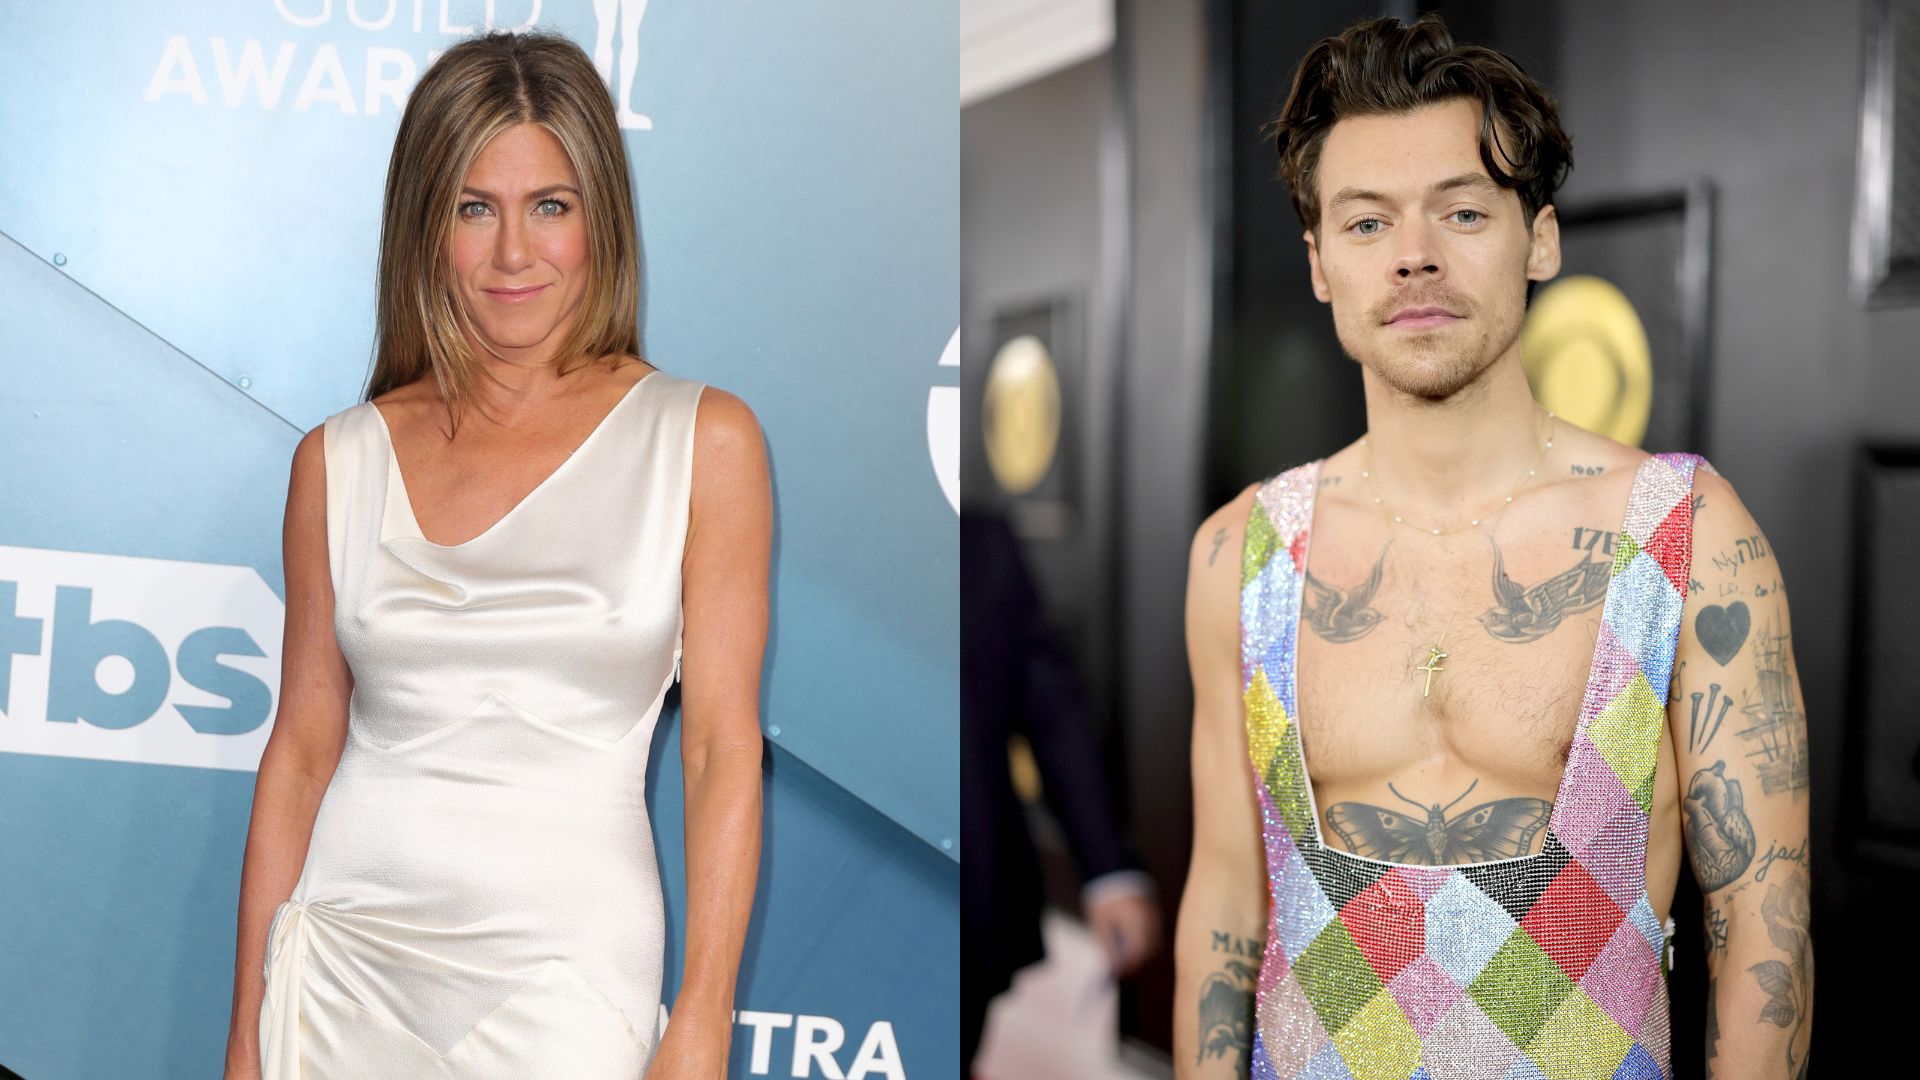 Jennifer Aniston e Harry Styles estariam flertando através de mensagens após acidente hilário em show, diz jornal